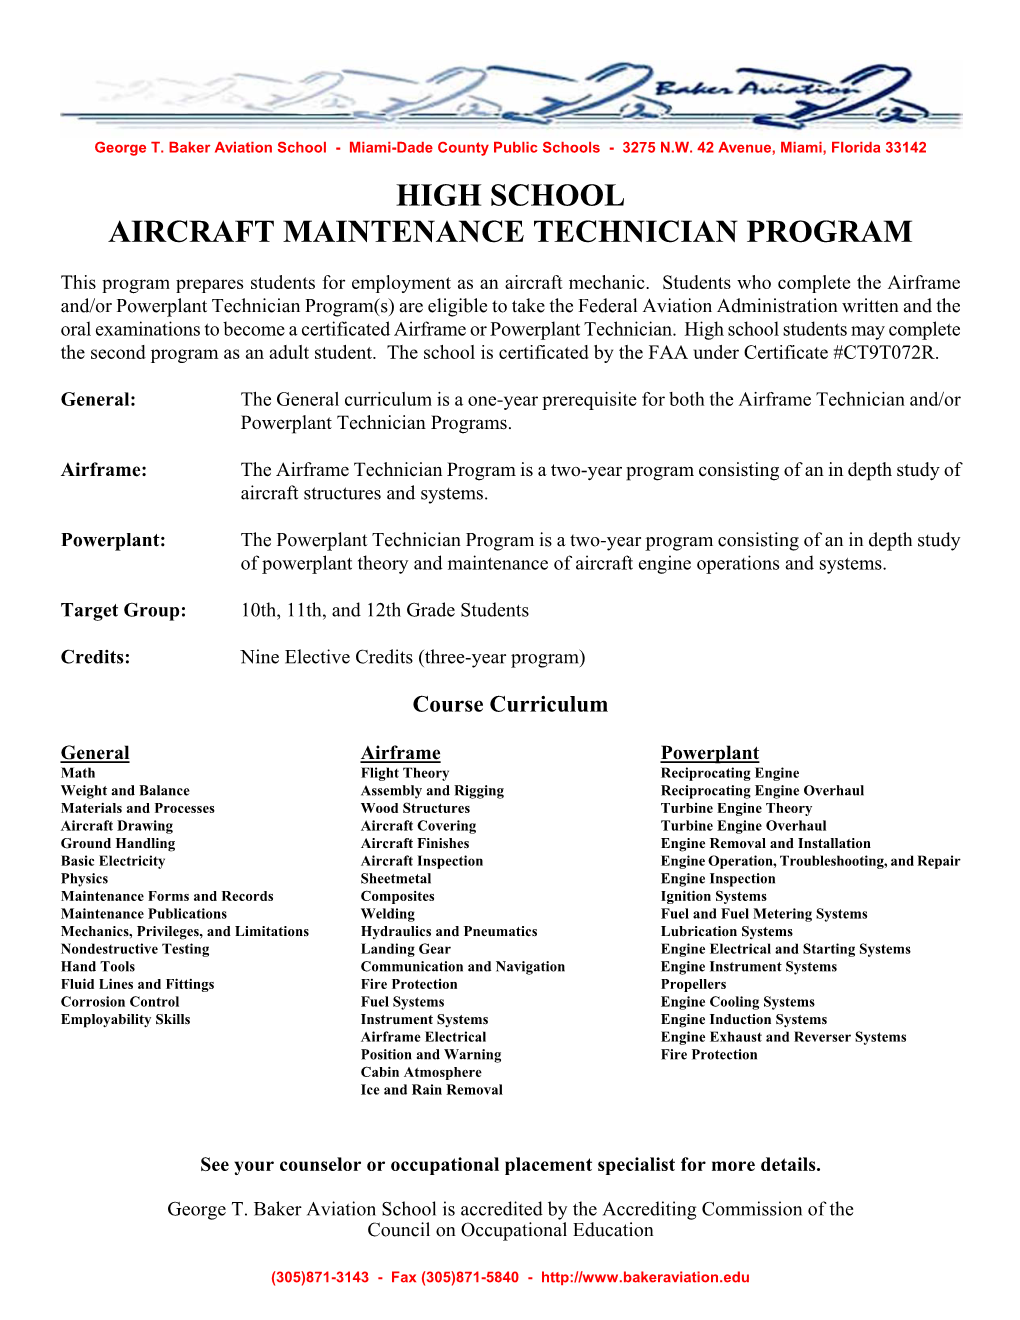 High School Aircraft Maintenance Technician Program